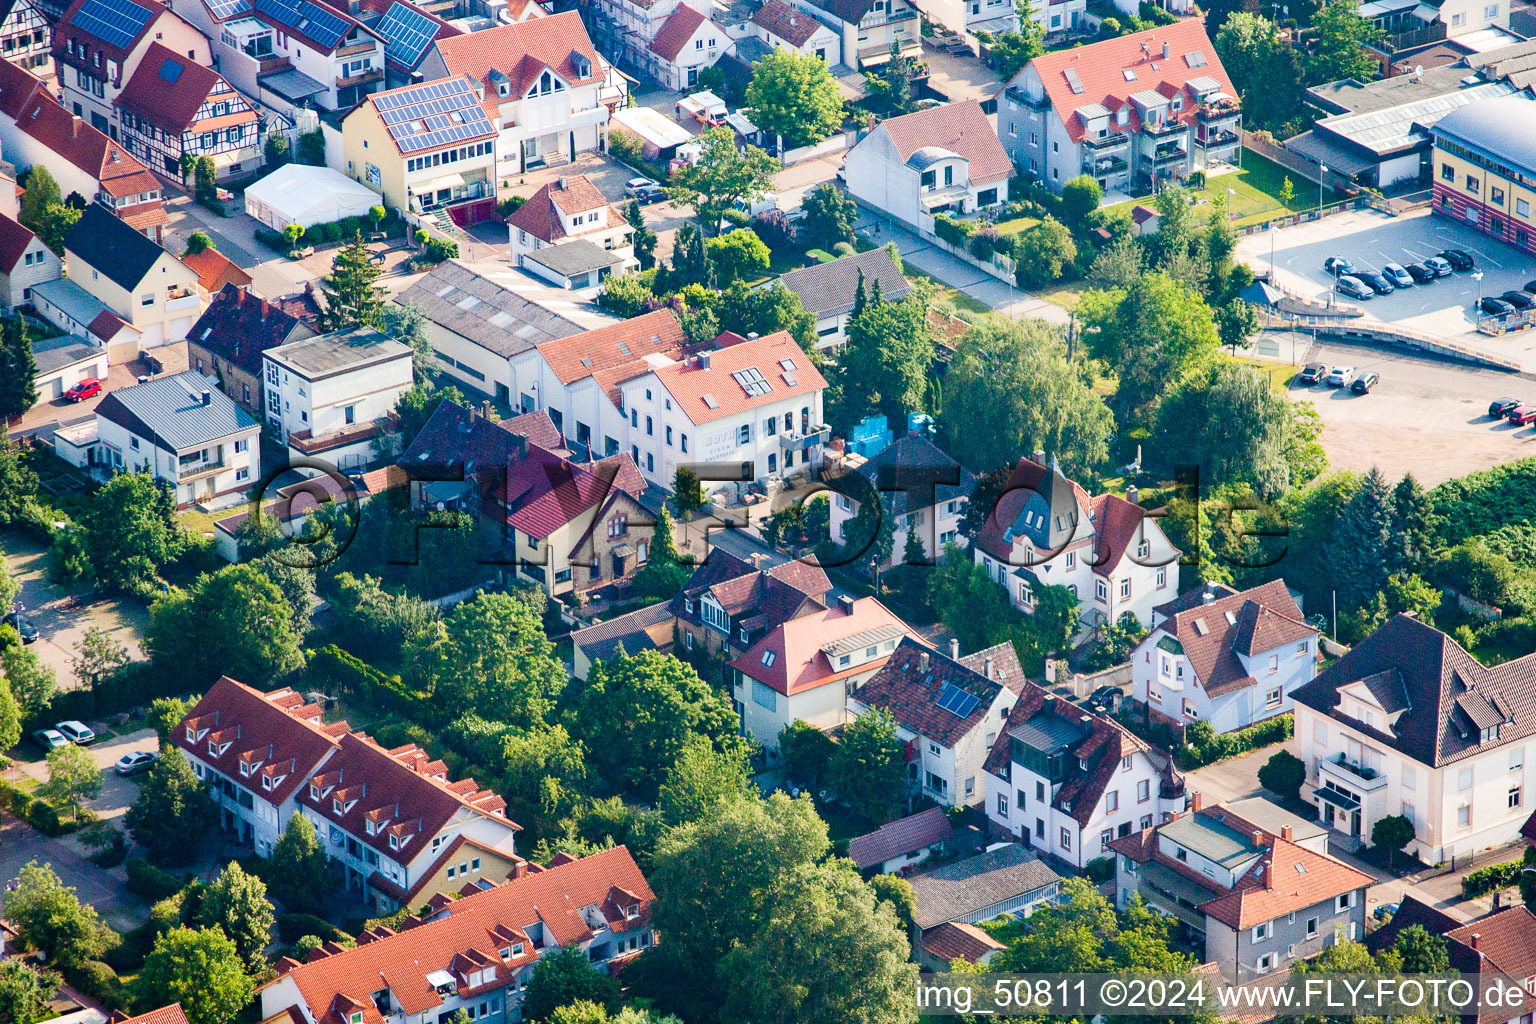 Bismarckstr in Kandel im Bundesland Rheinland-Pfalz, Deutschland von einer Drohne aus